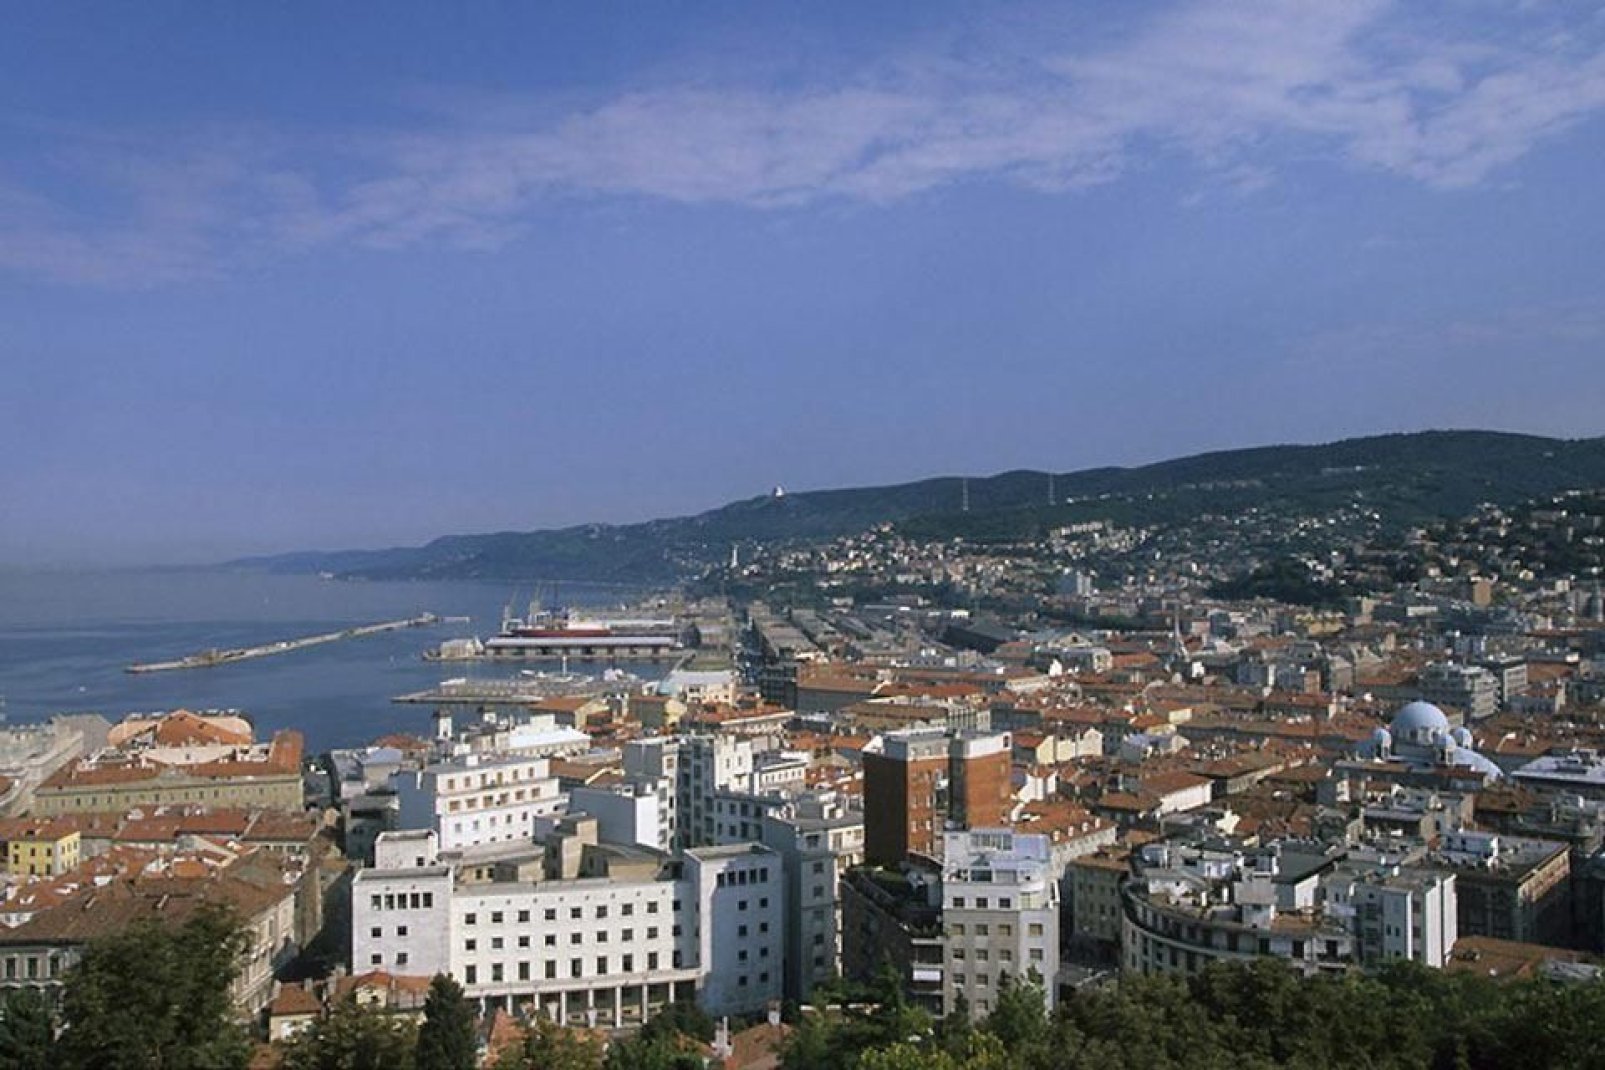 Città di mare, Trieste fu per l'impero asburgico uno dei porti più importanti.